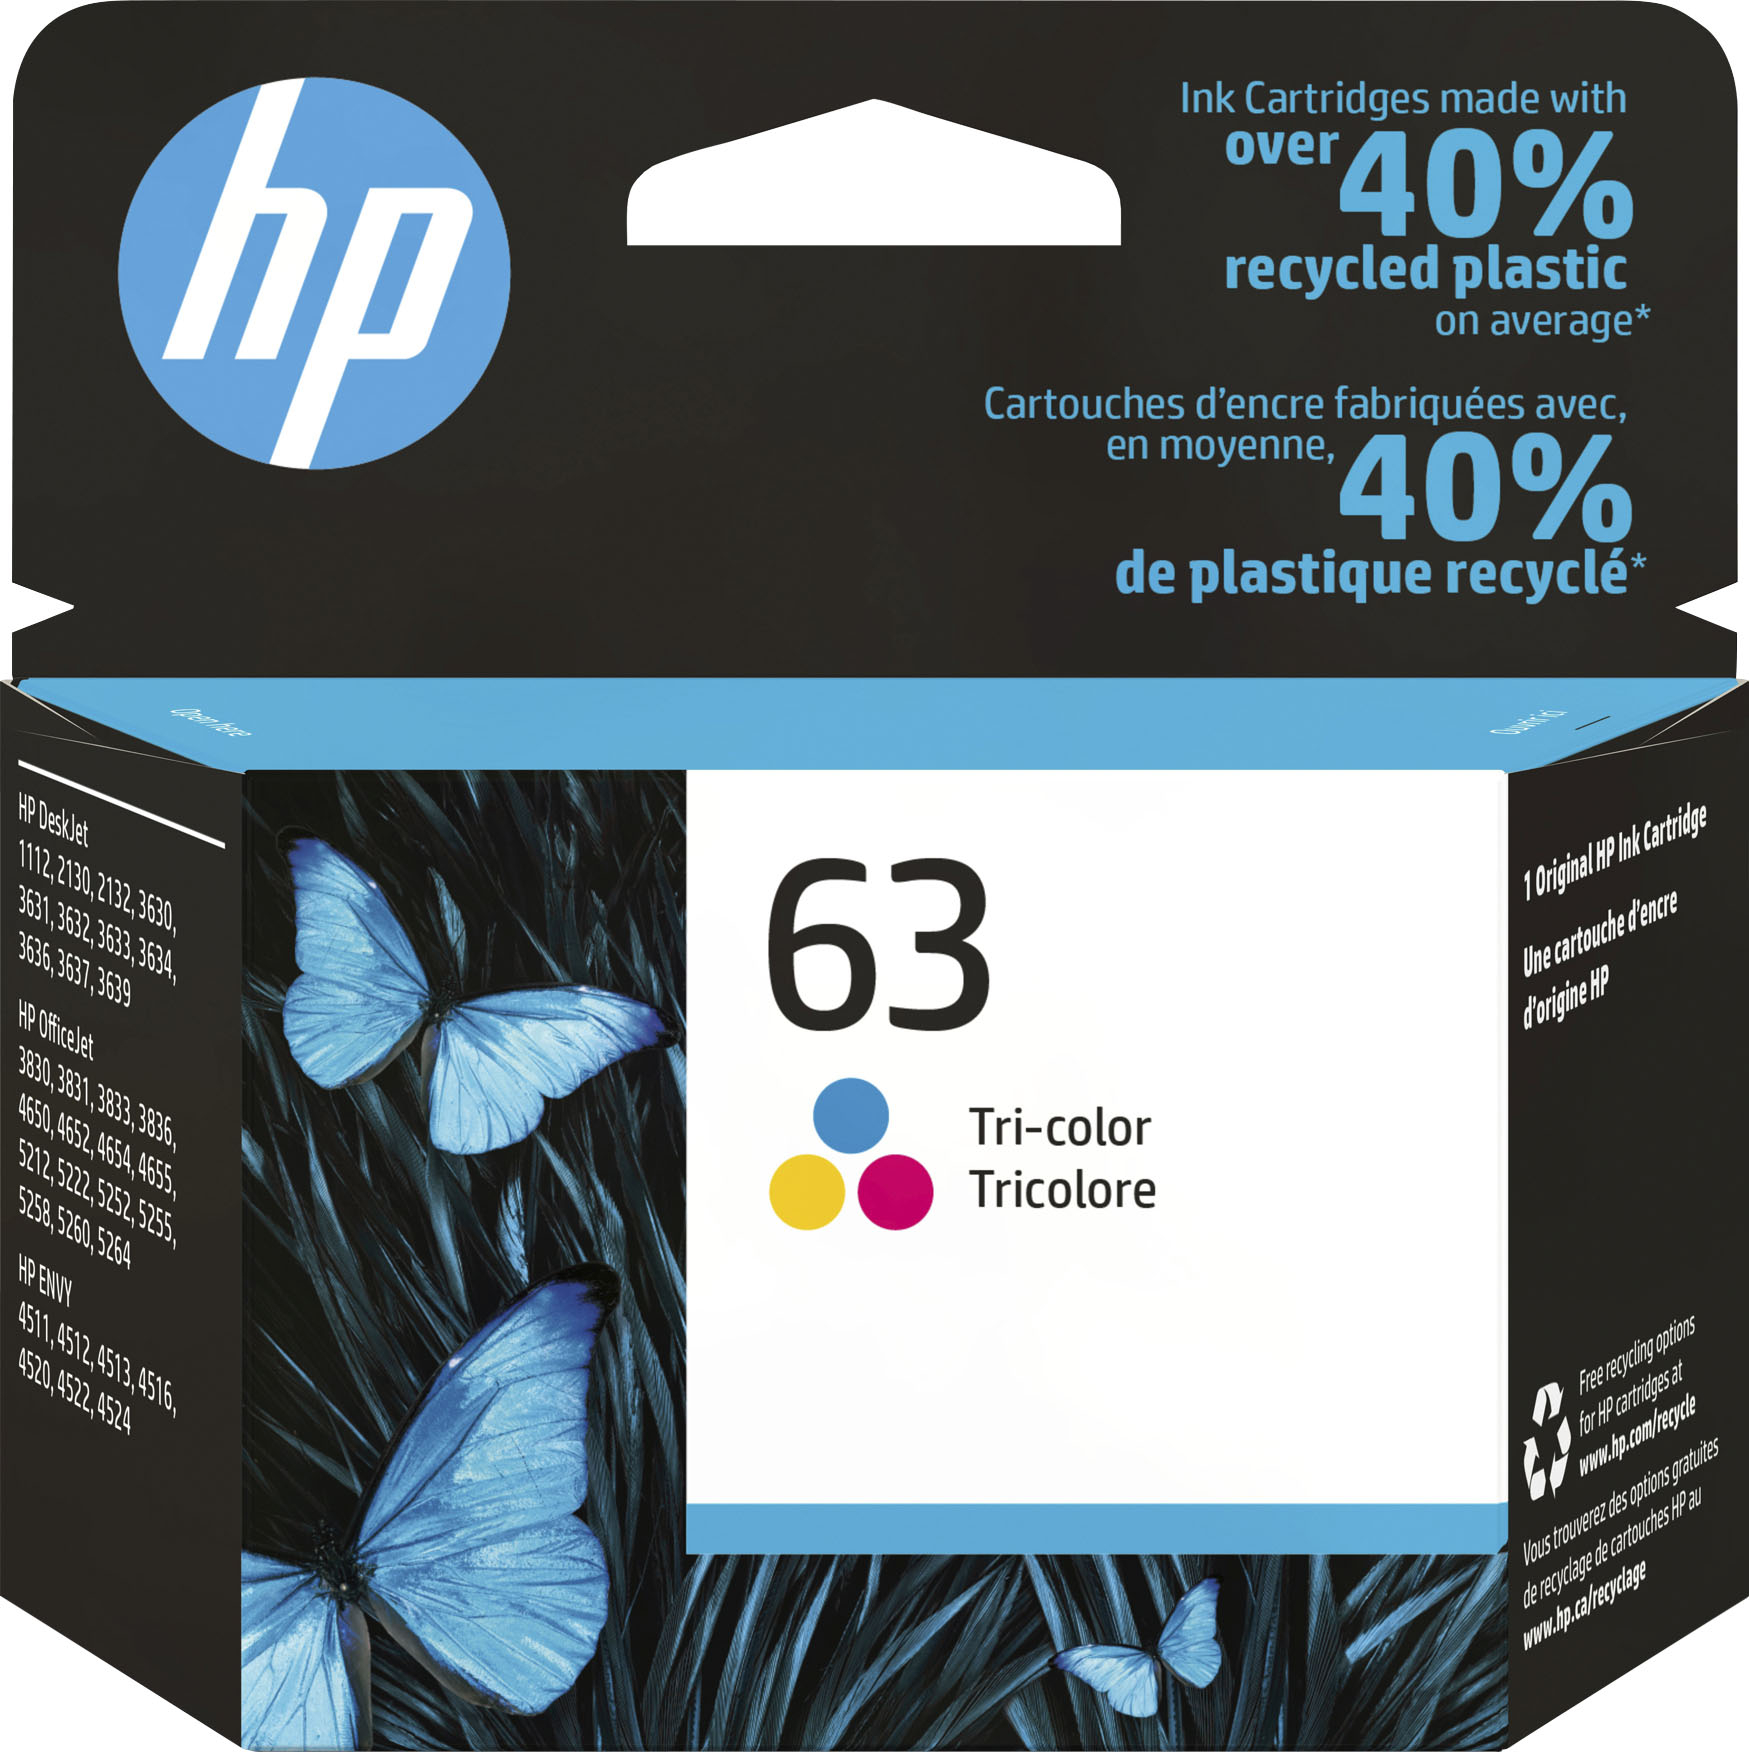 Buy HP 302 Original Ink Cartridge - Colour, Printer ink